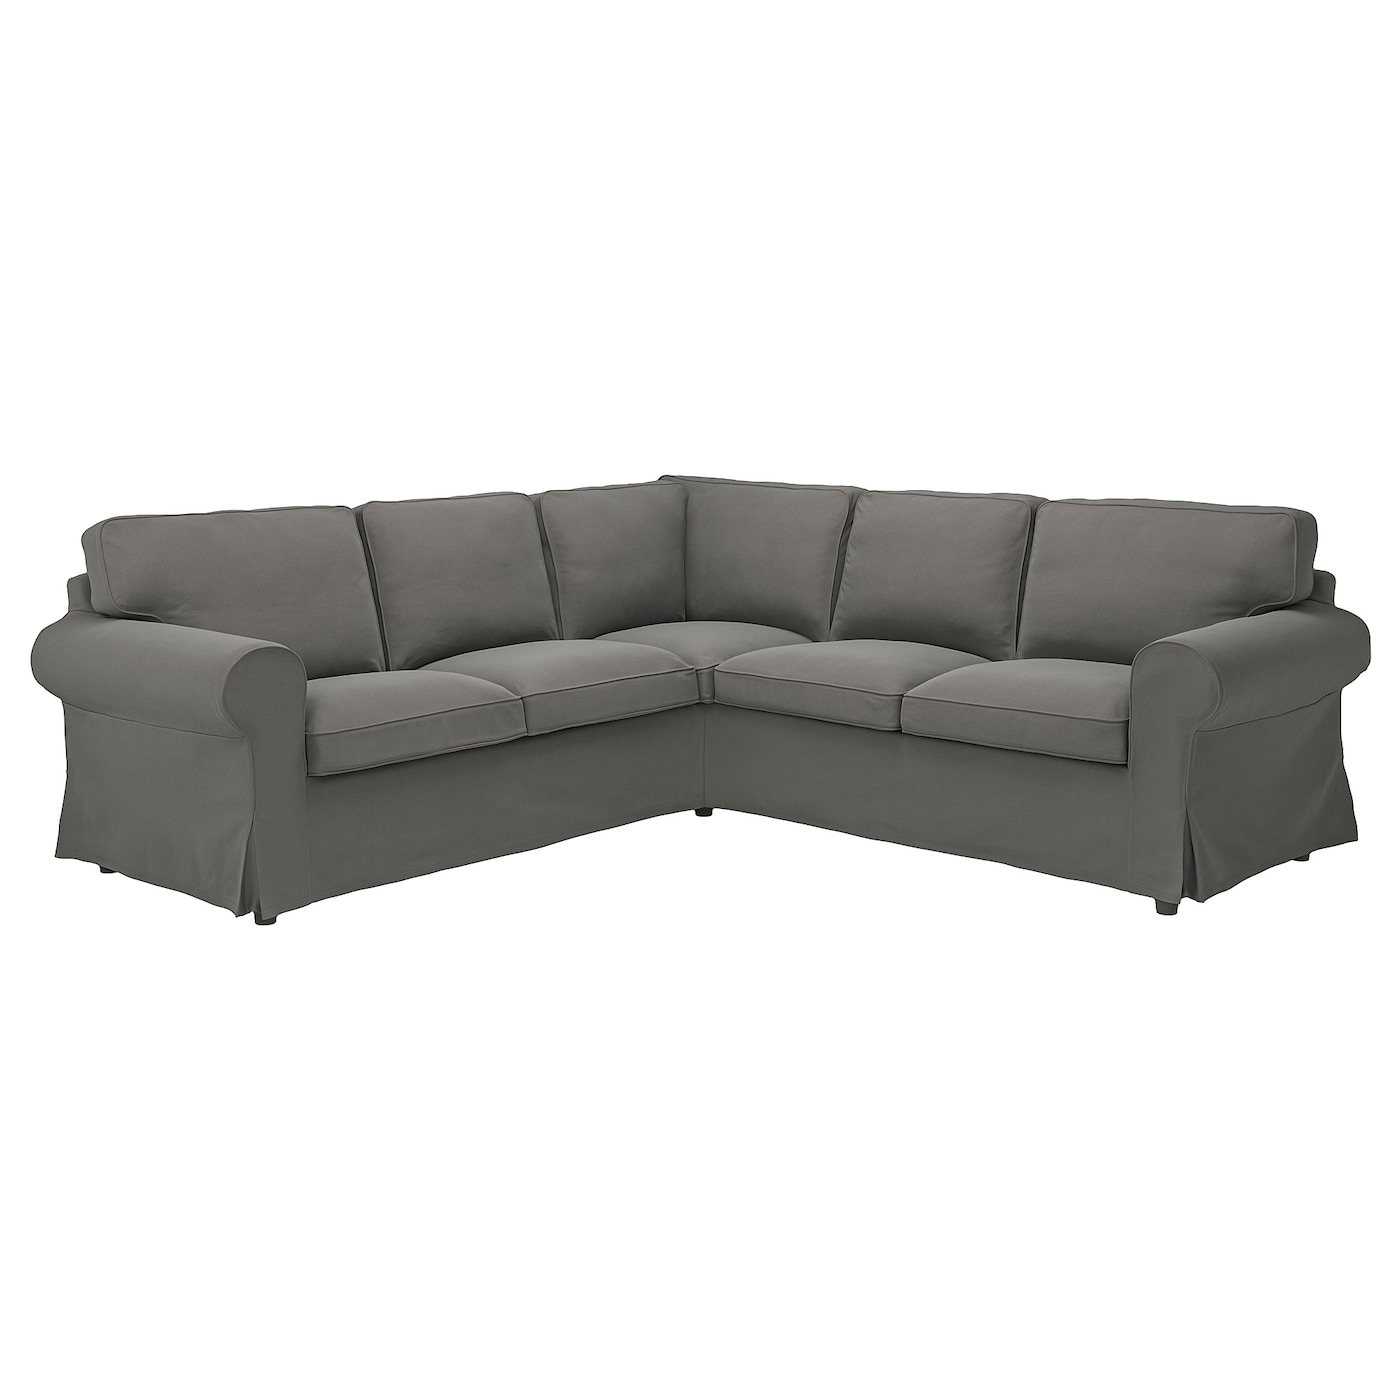 ЭКТОРП 4-местный угловой диван, Хакебо темно-серый EKTORP IKEA чехол на 2 местный угловой диван ikea ektorp светло серый